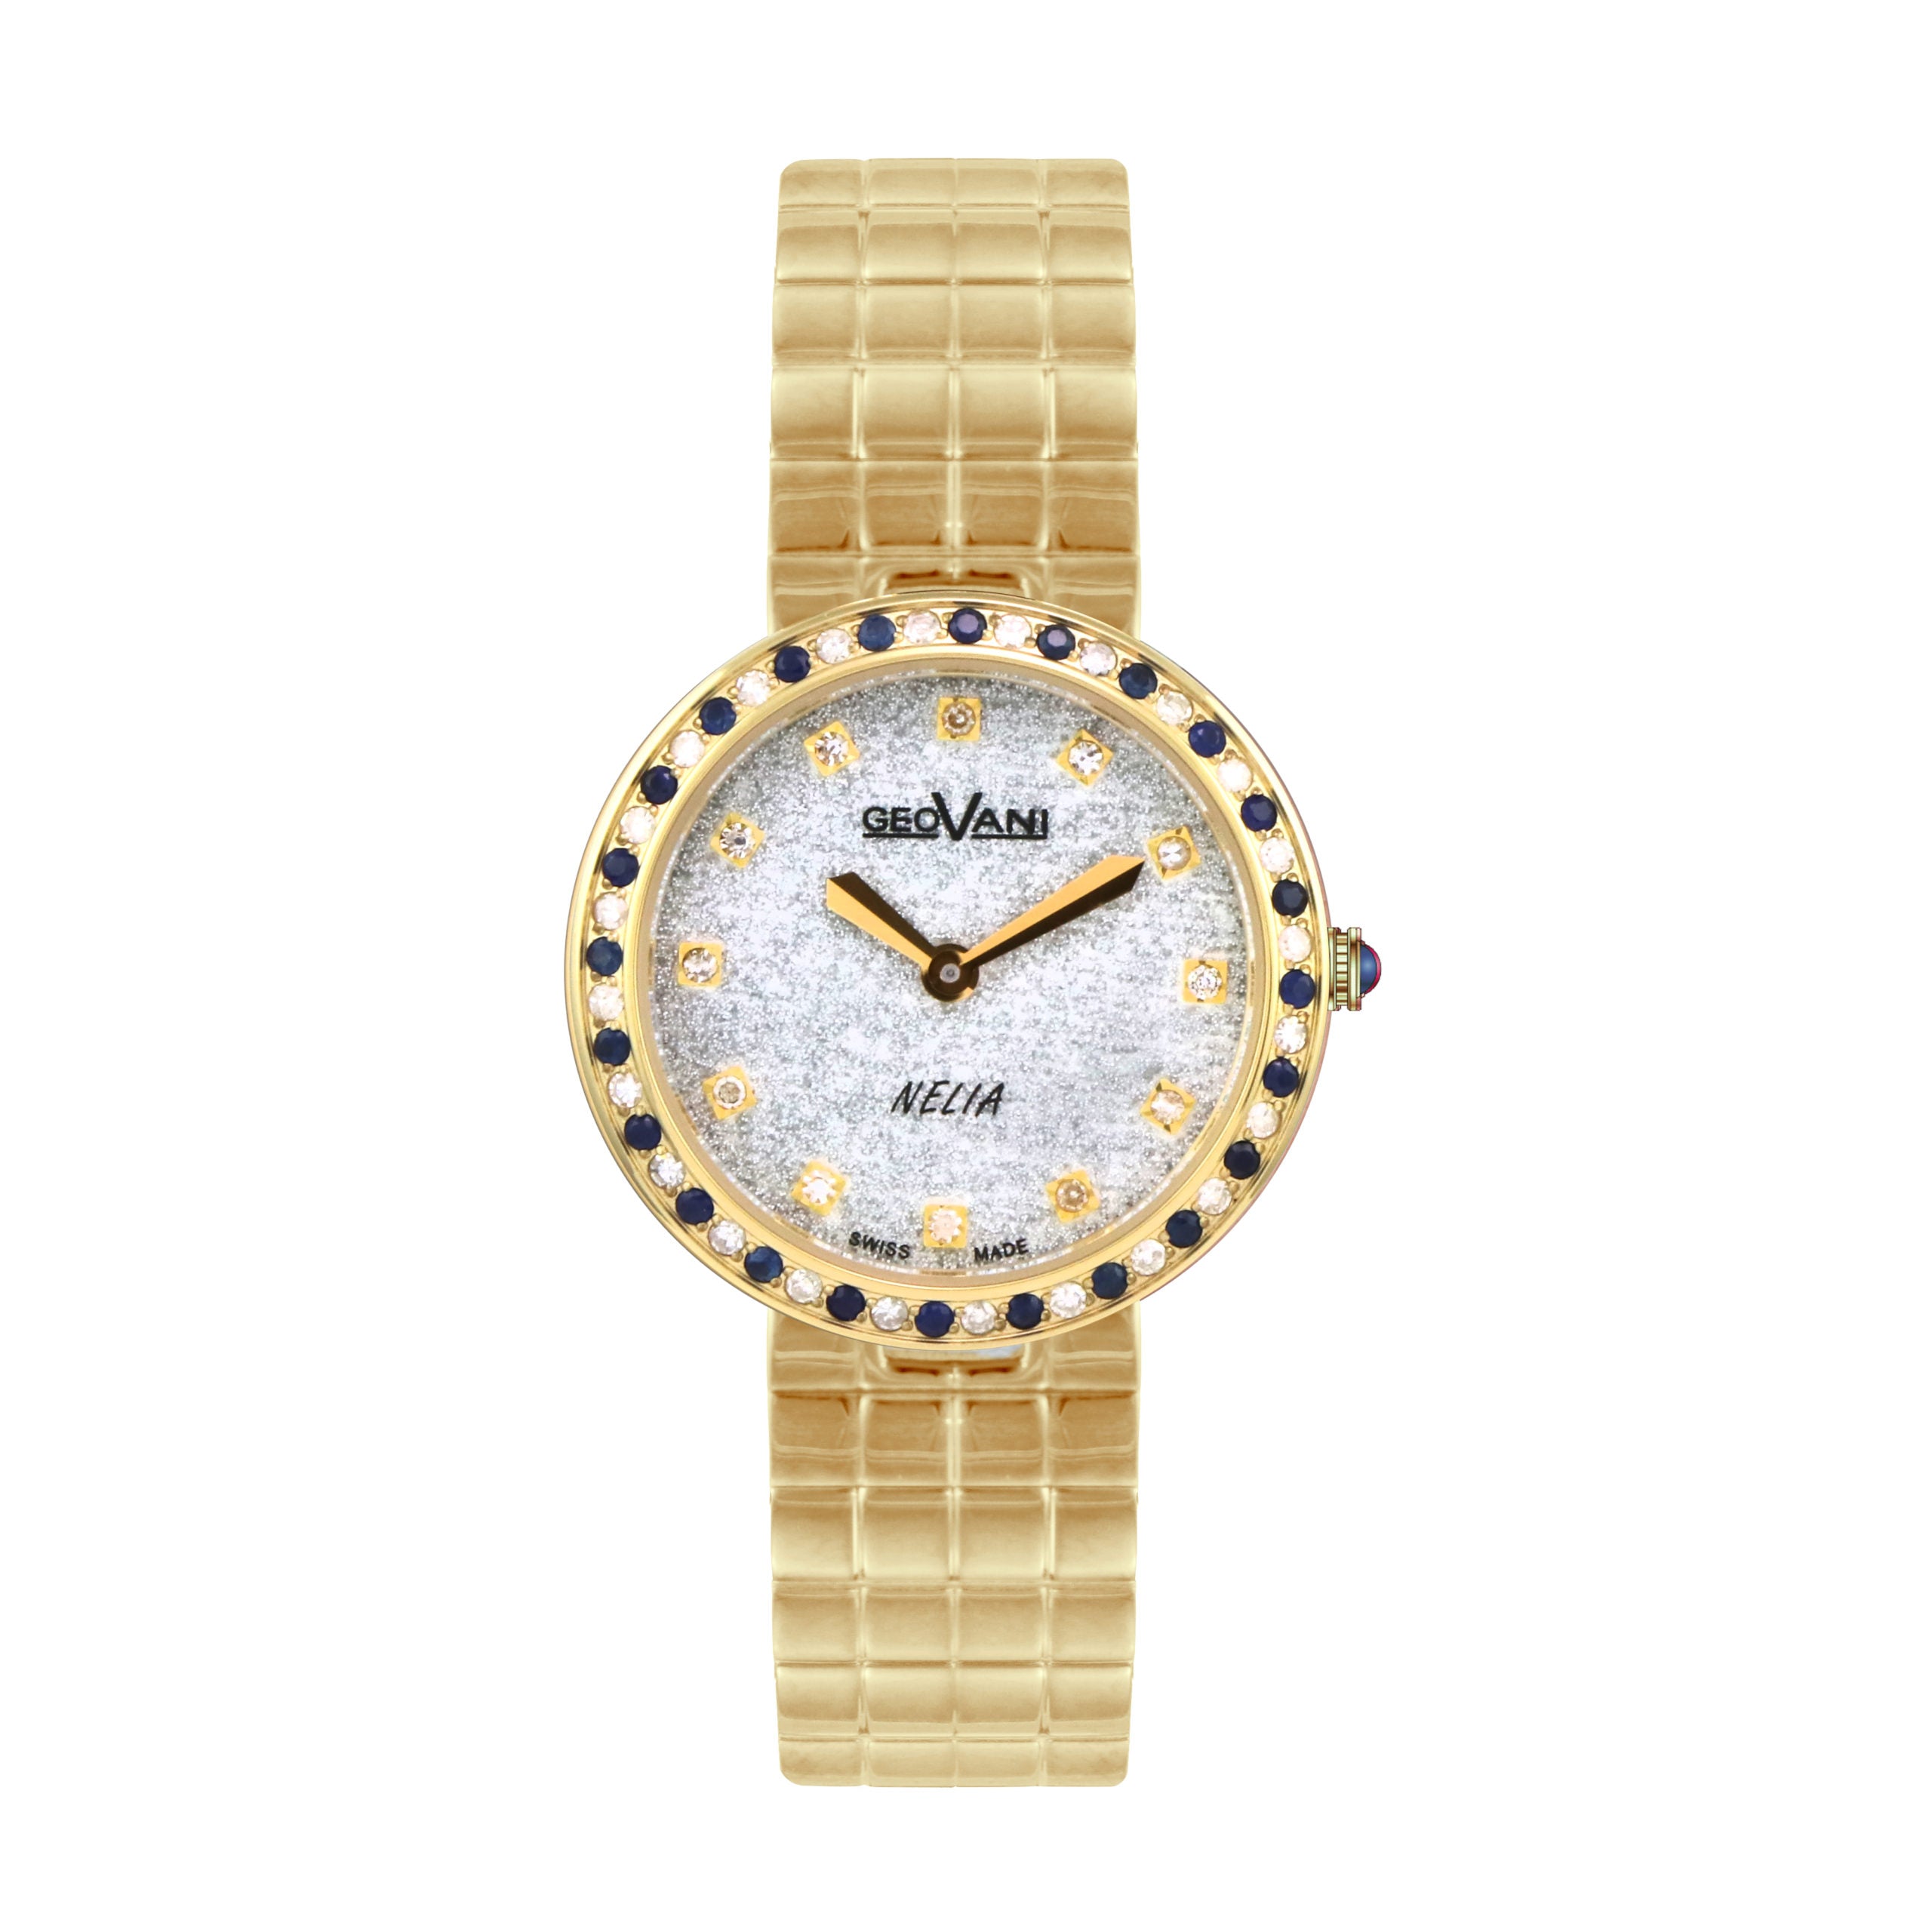 Giovanni Women's Swiss Quartz Watch with Shiny Silver Dial - GEO-0024